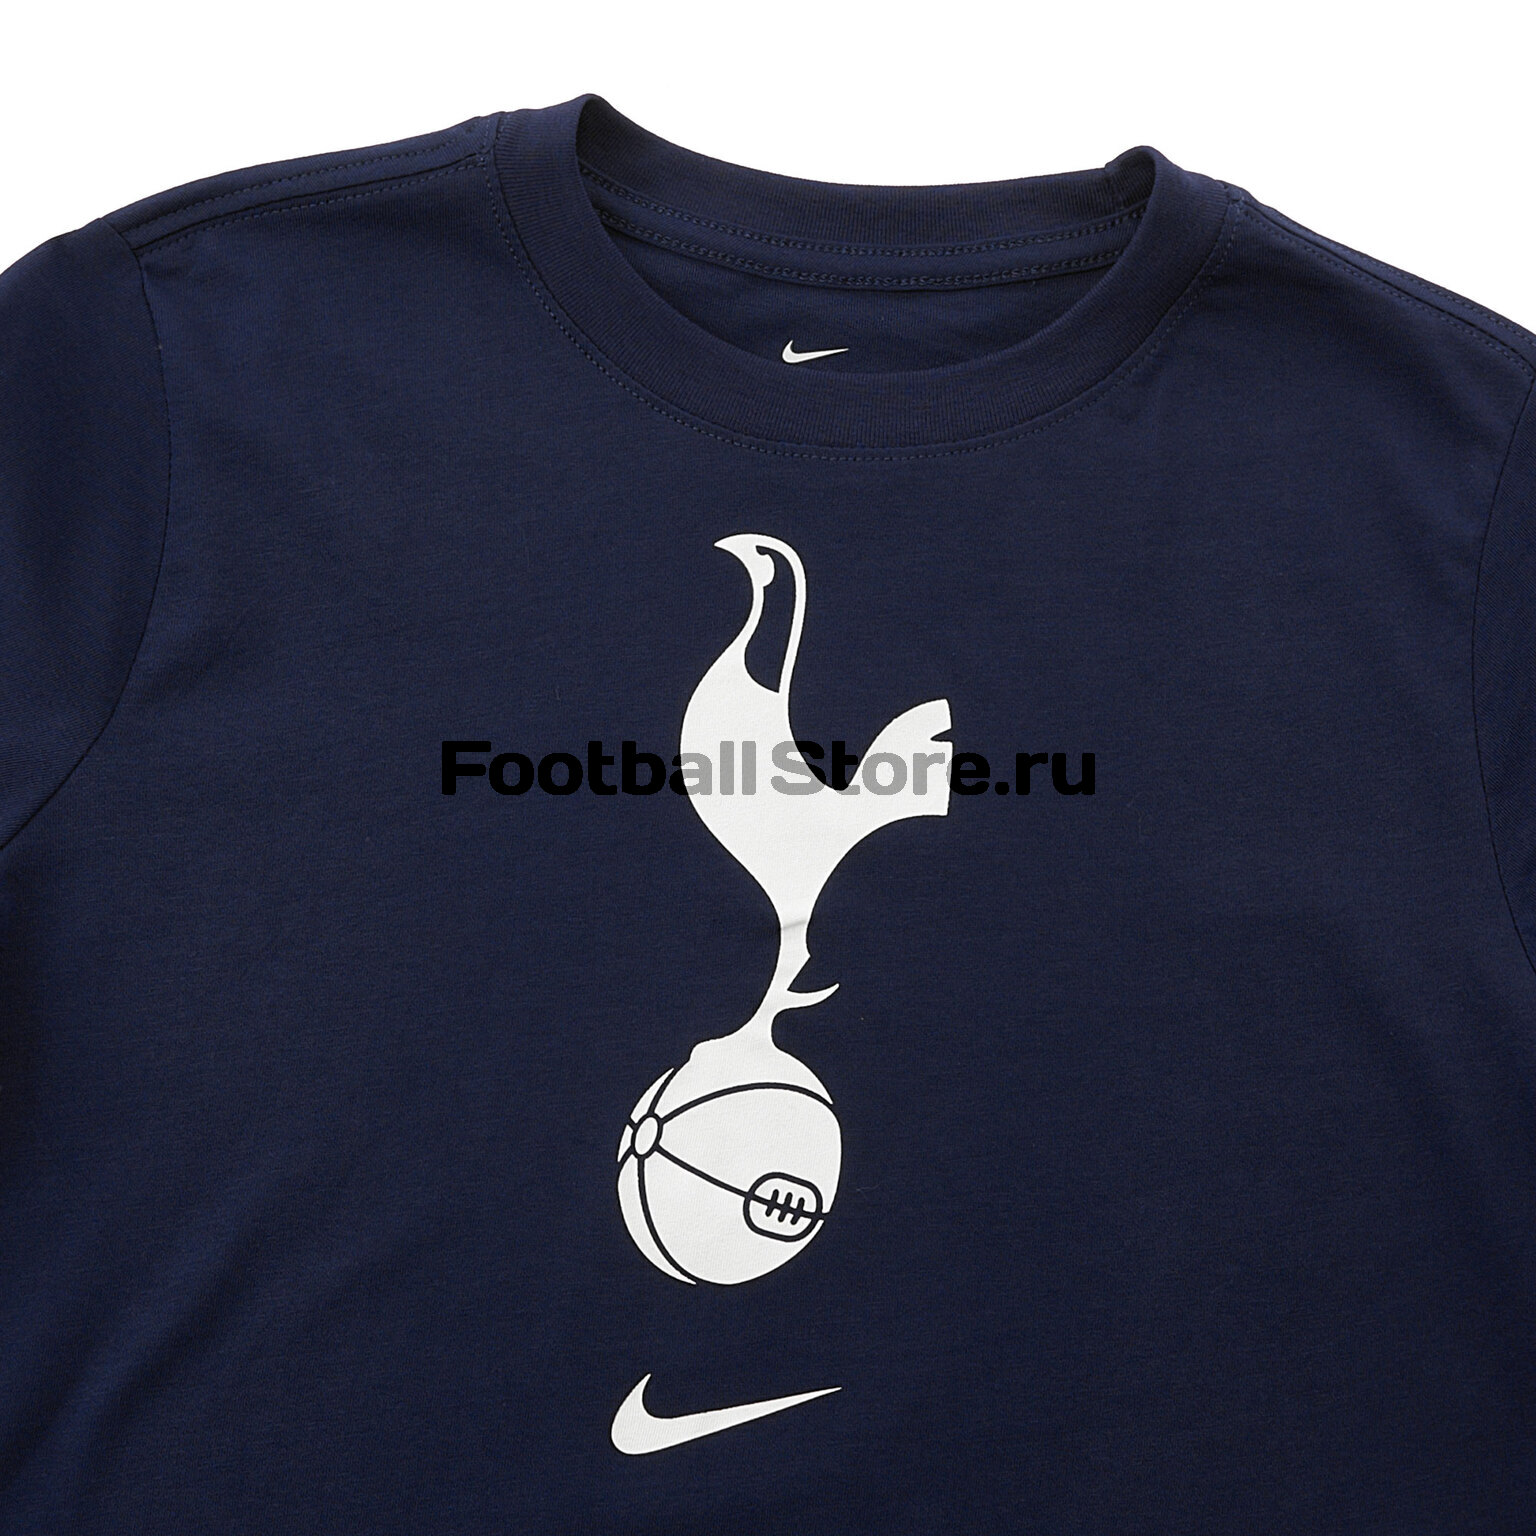 Футболка подростковая хлопковая Nike Tottenham AQ7867-429